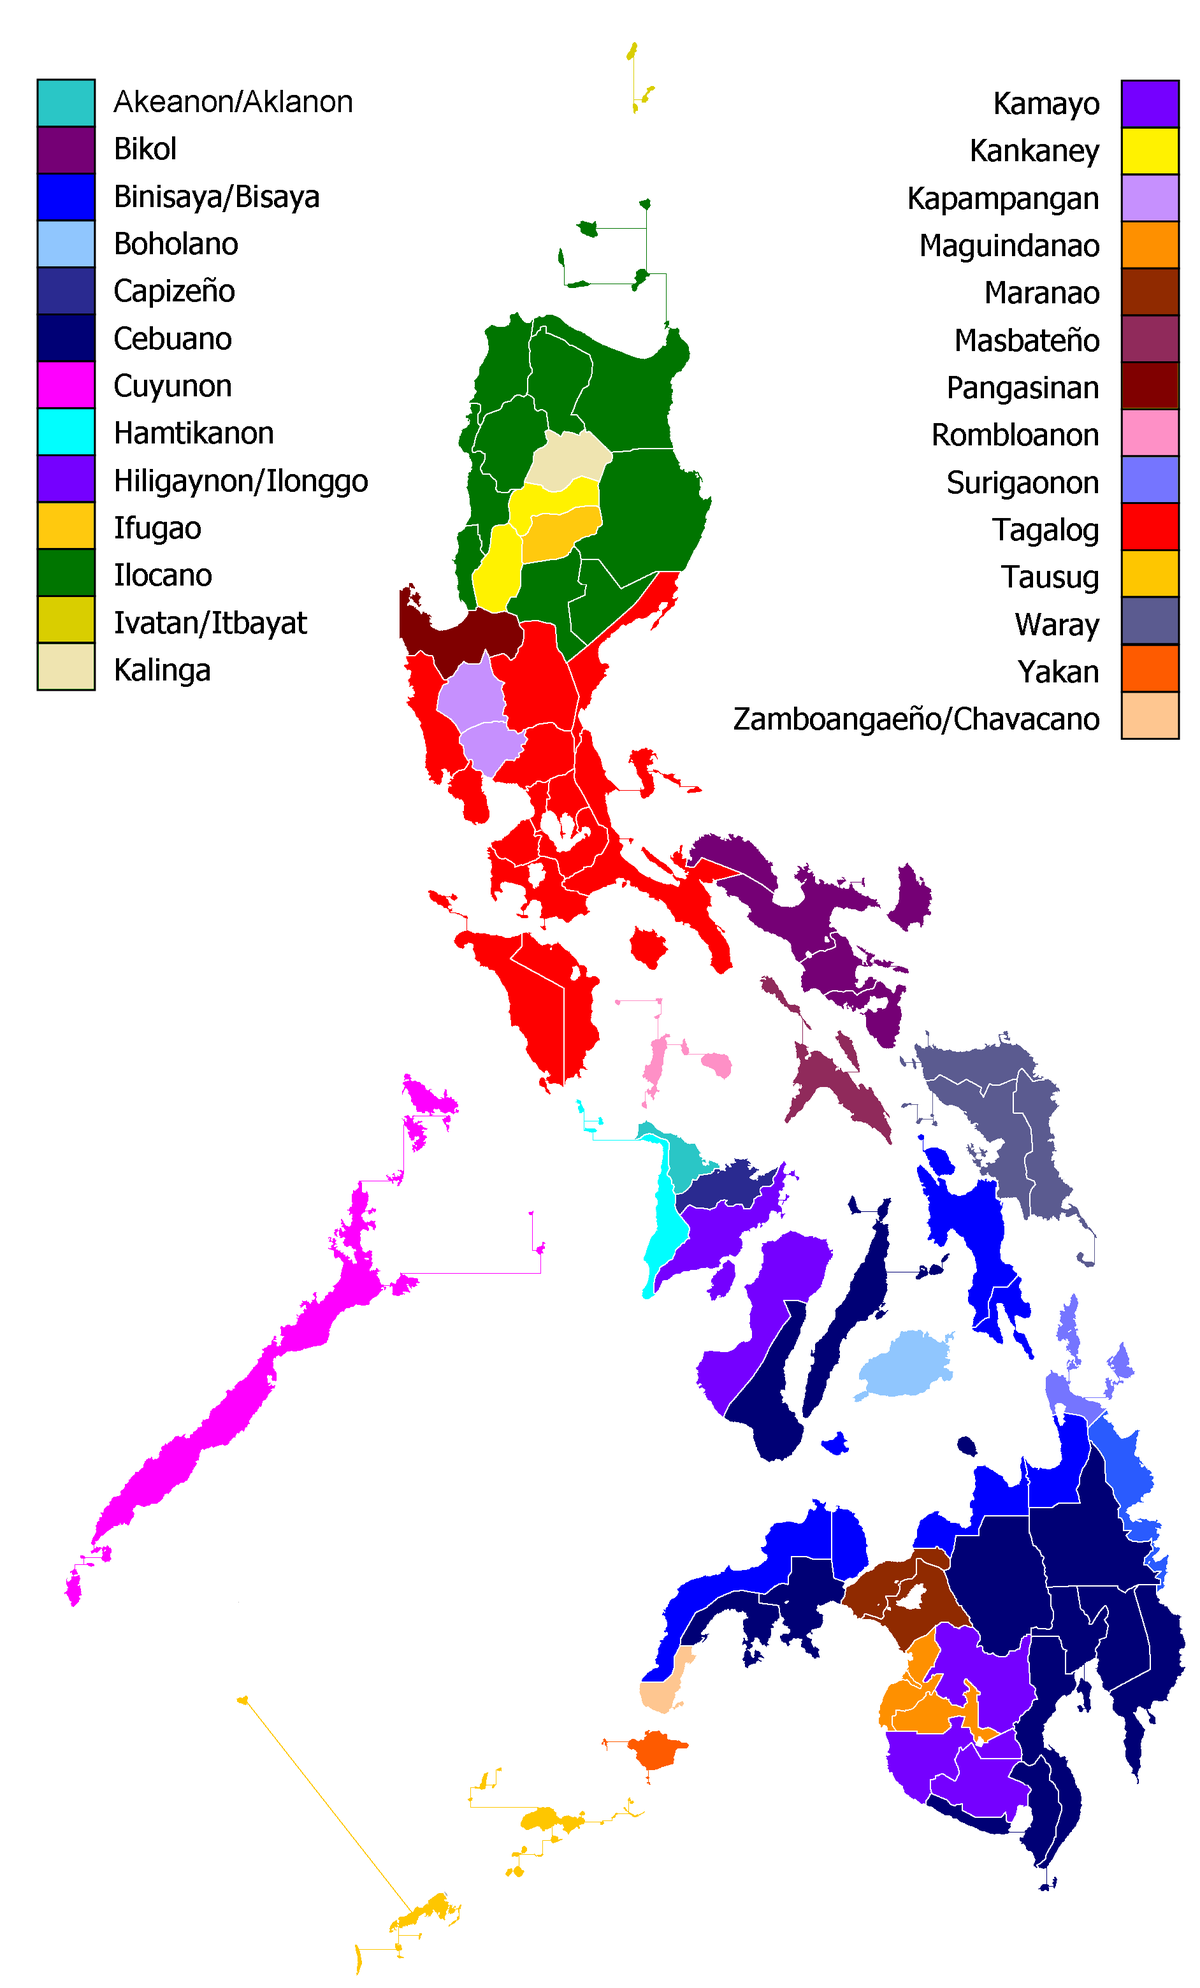 PDF) WikaGenZ: Bagong anyo ng Filipino slang sa Pilipinas